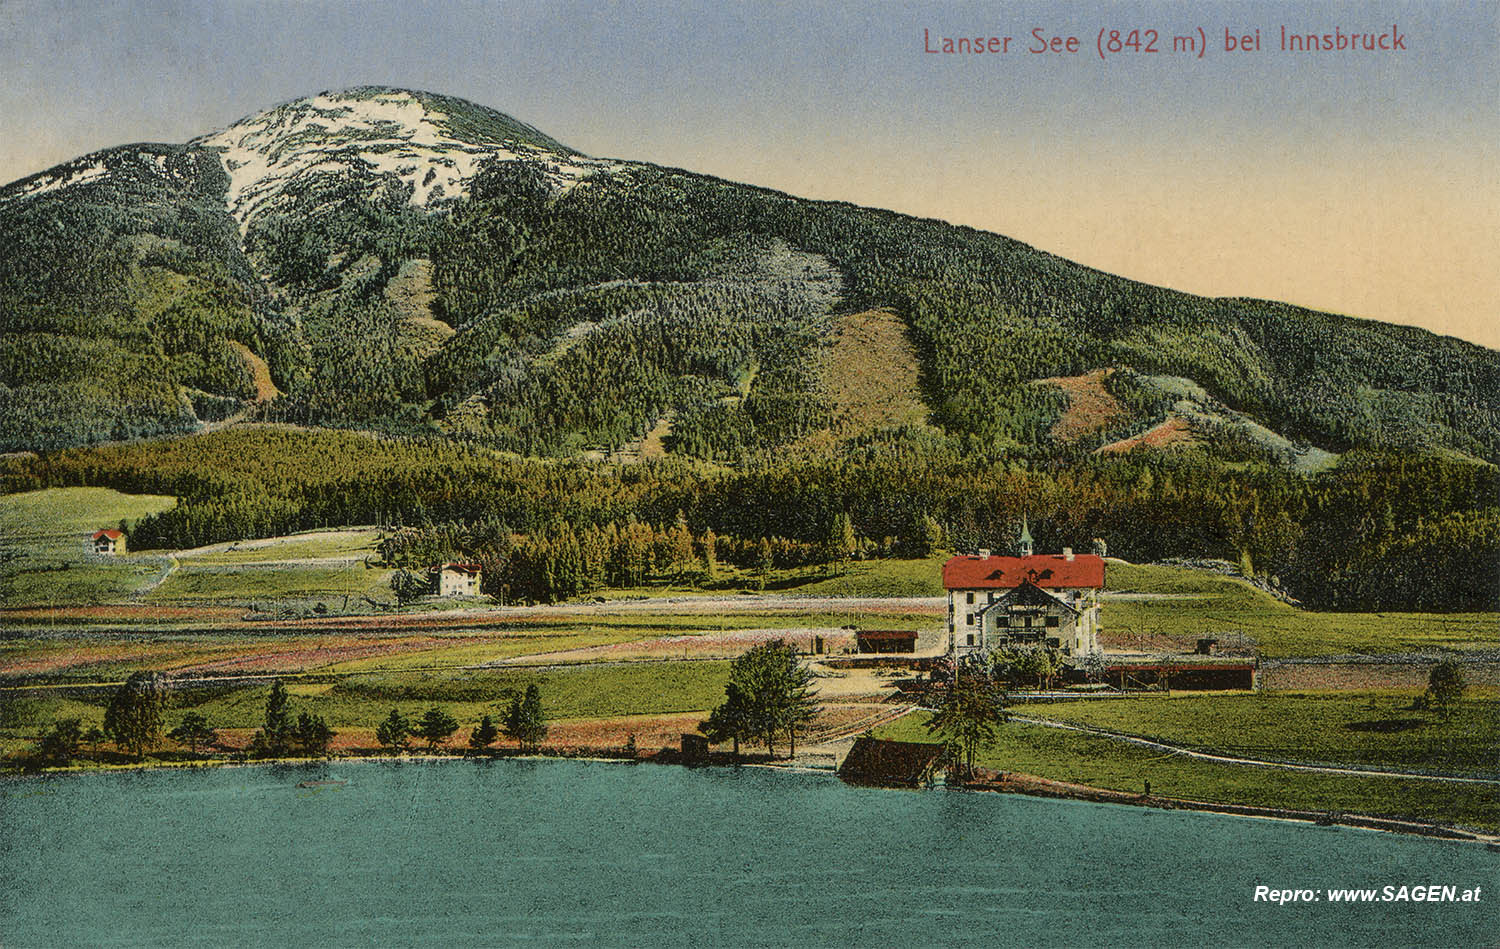 Lanser See (842m) bei Innsbruck